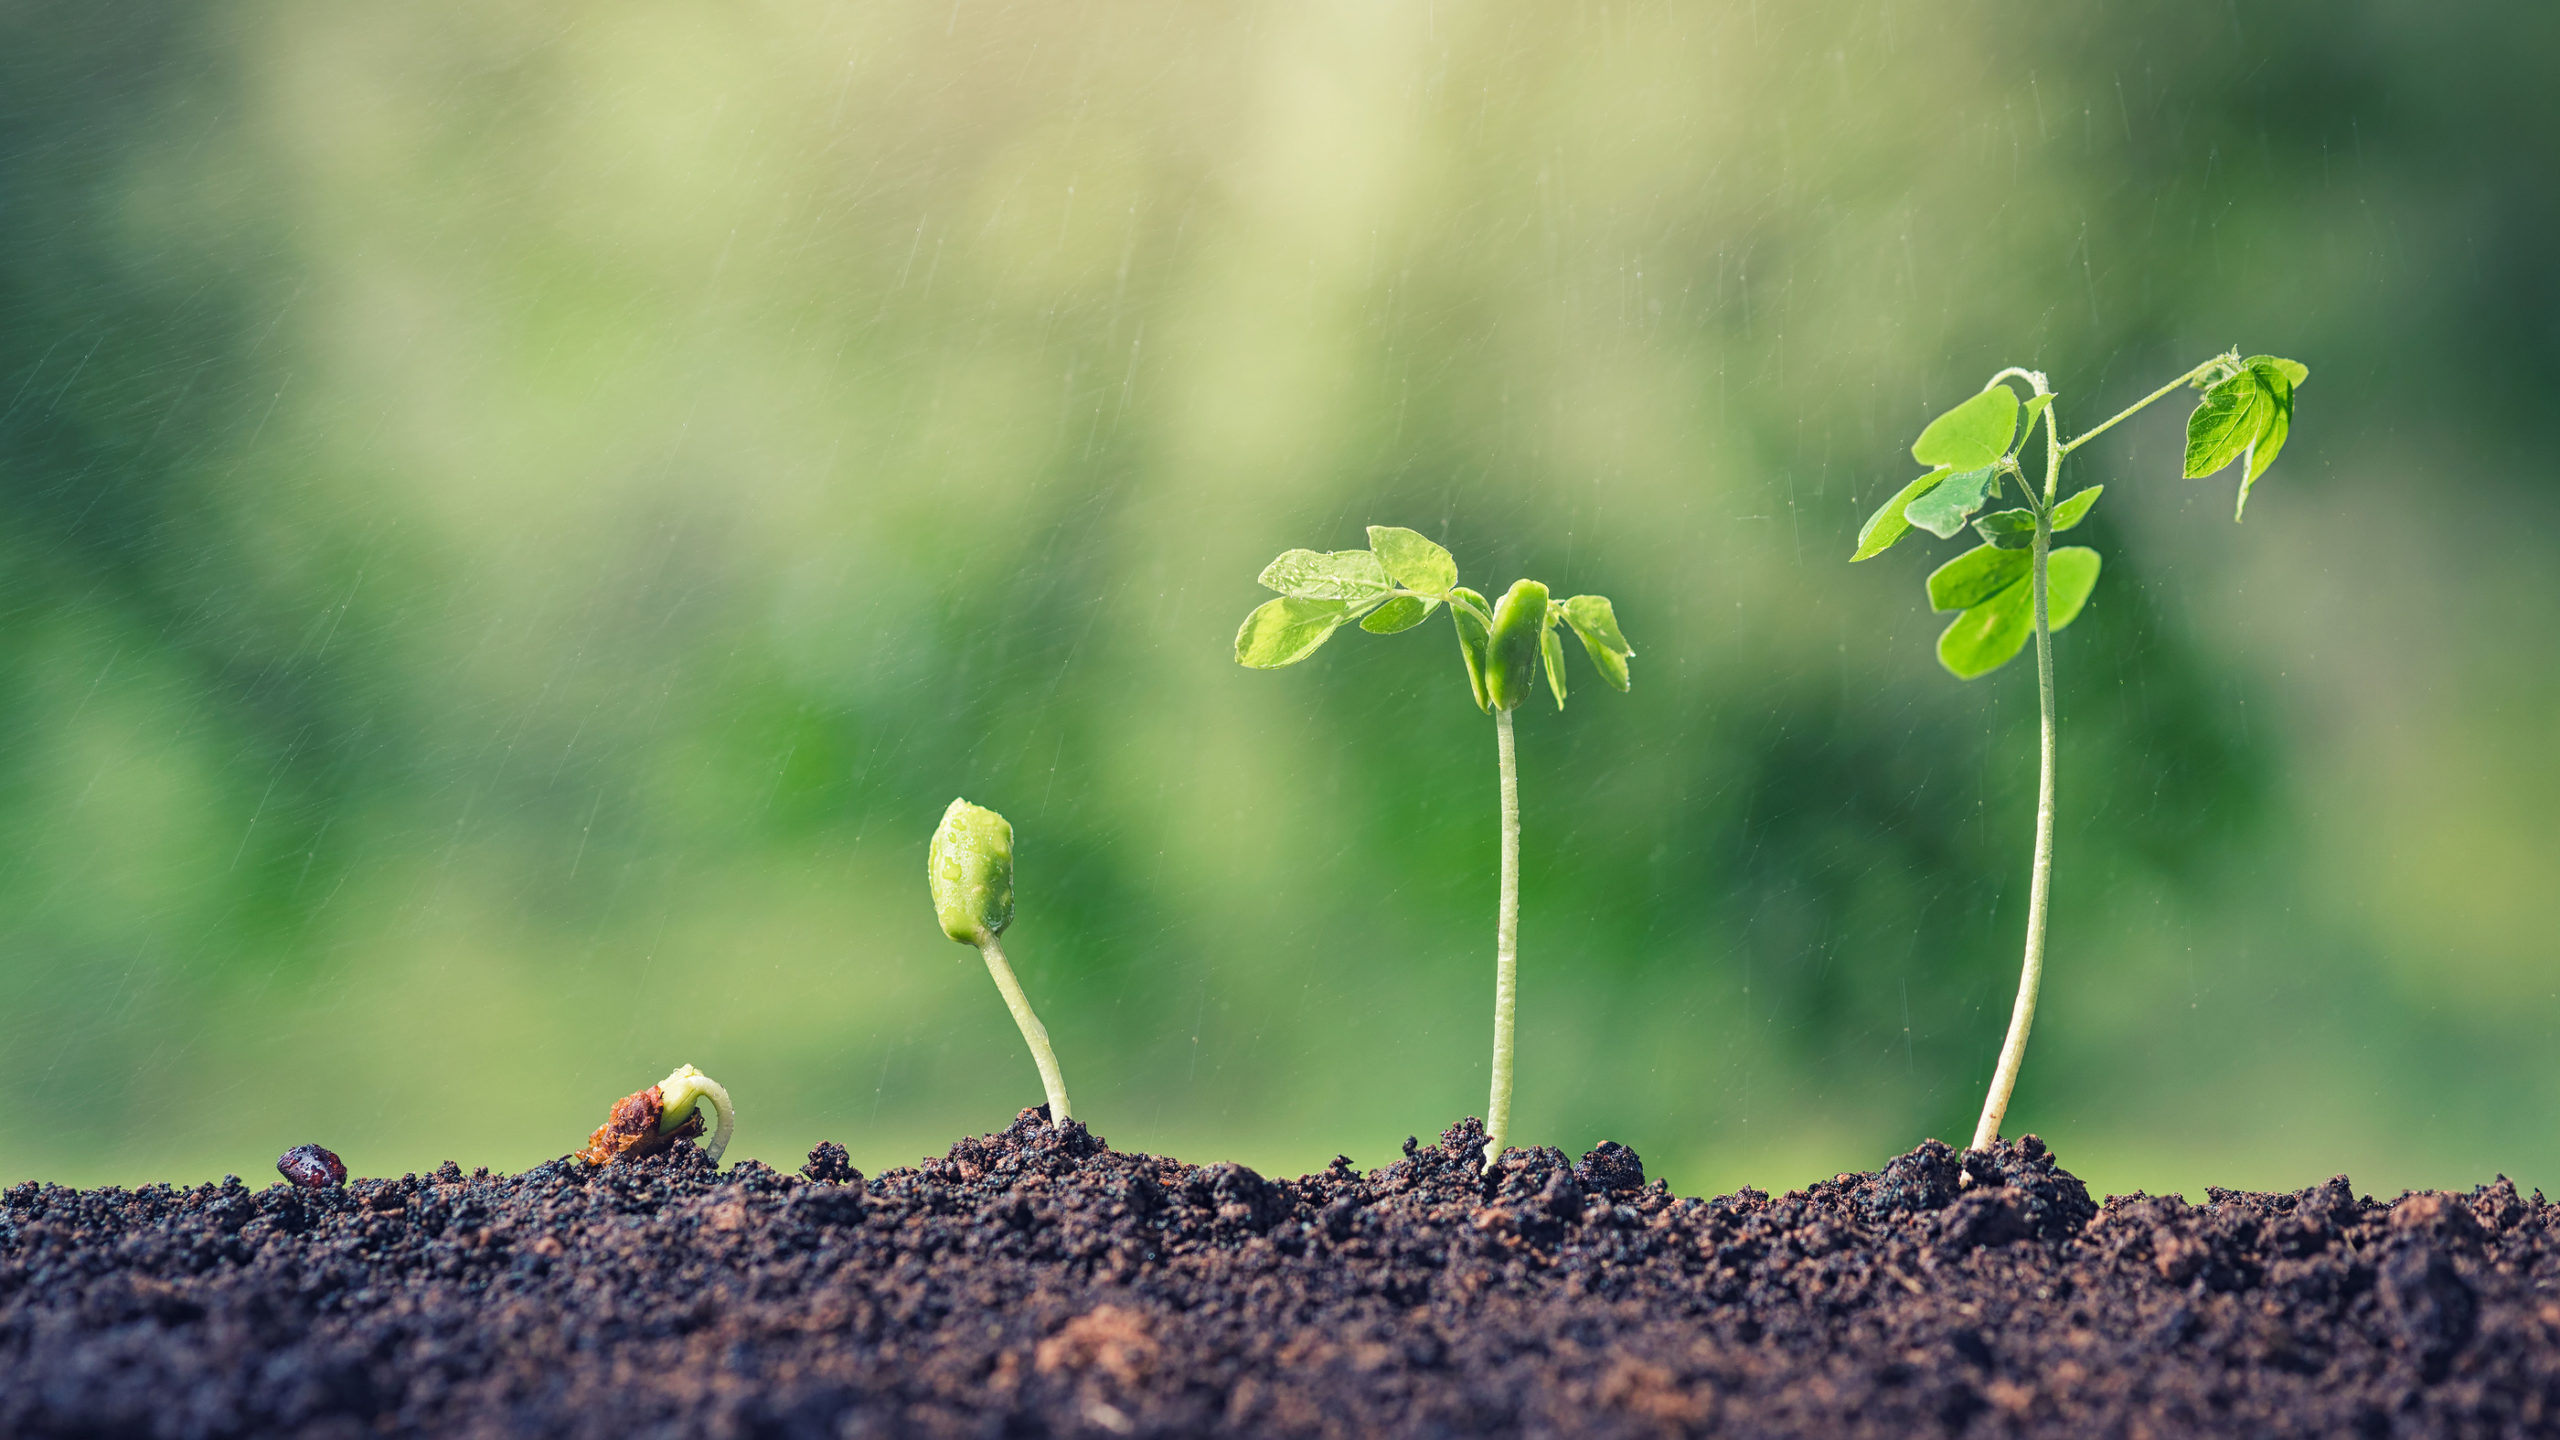 Tohum finansmanı nedir?: Bir işletme için tohum finansmanının ne anlama geldiğini anlamak